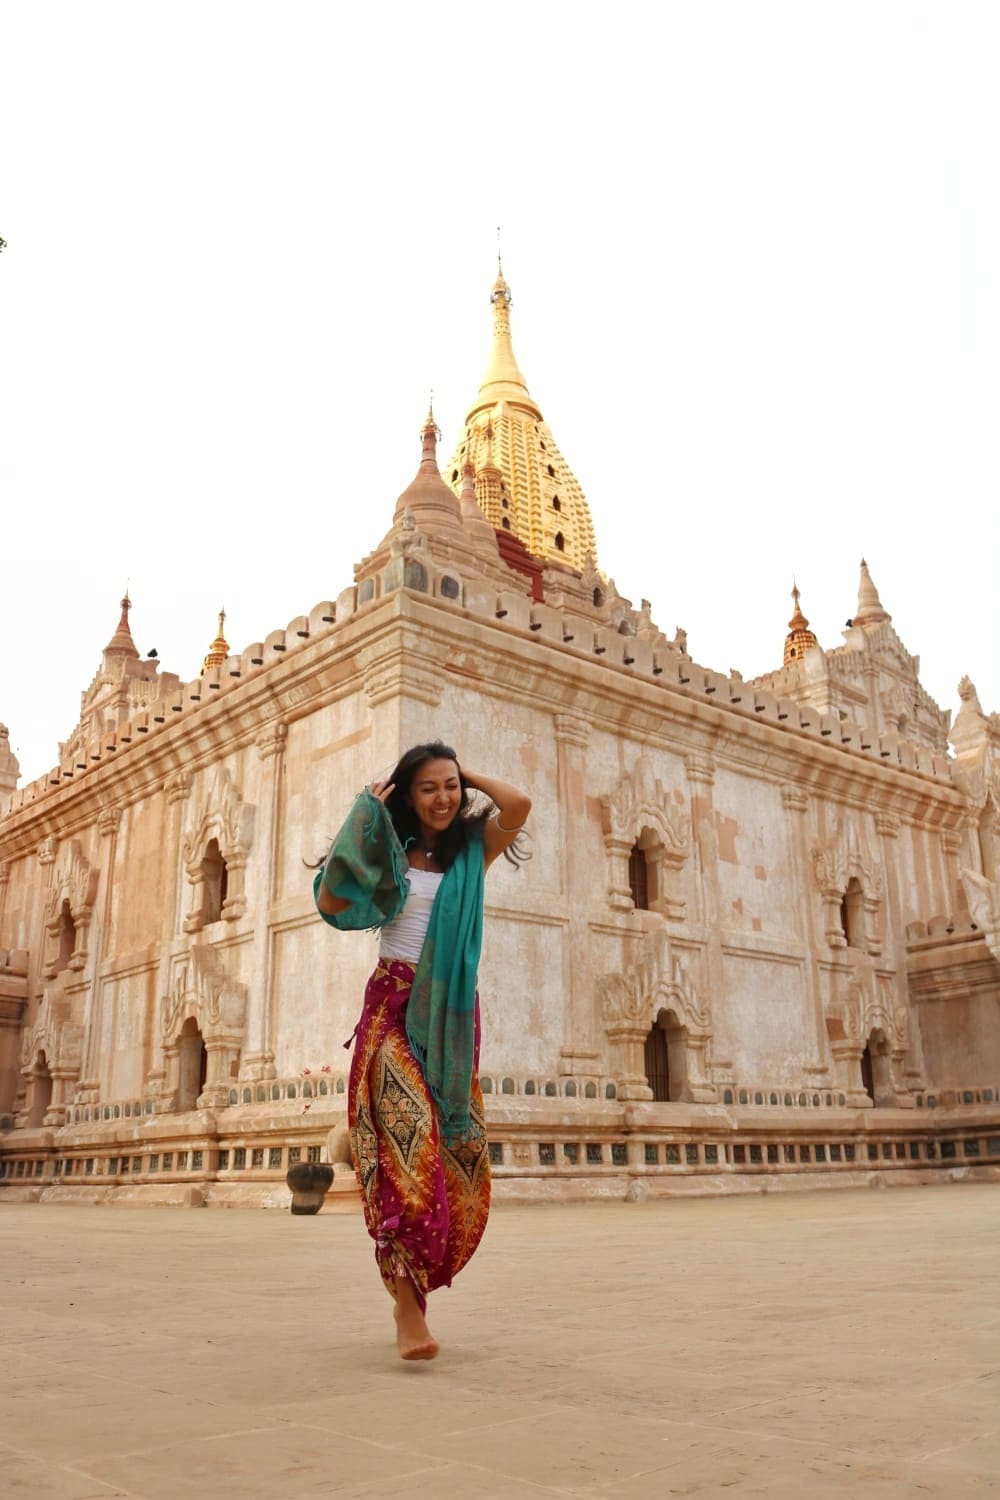 Viajar sola: Ericka de "Somos viajeras" en Myanmar